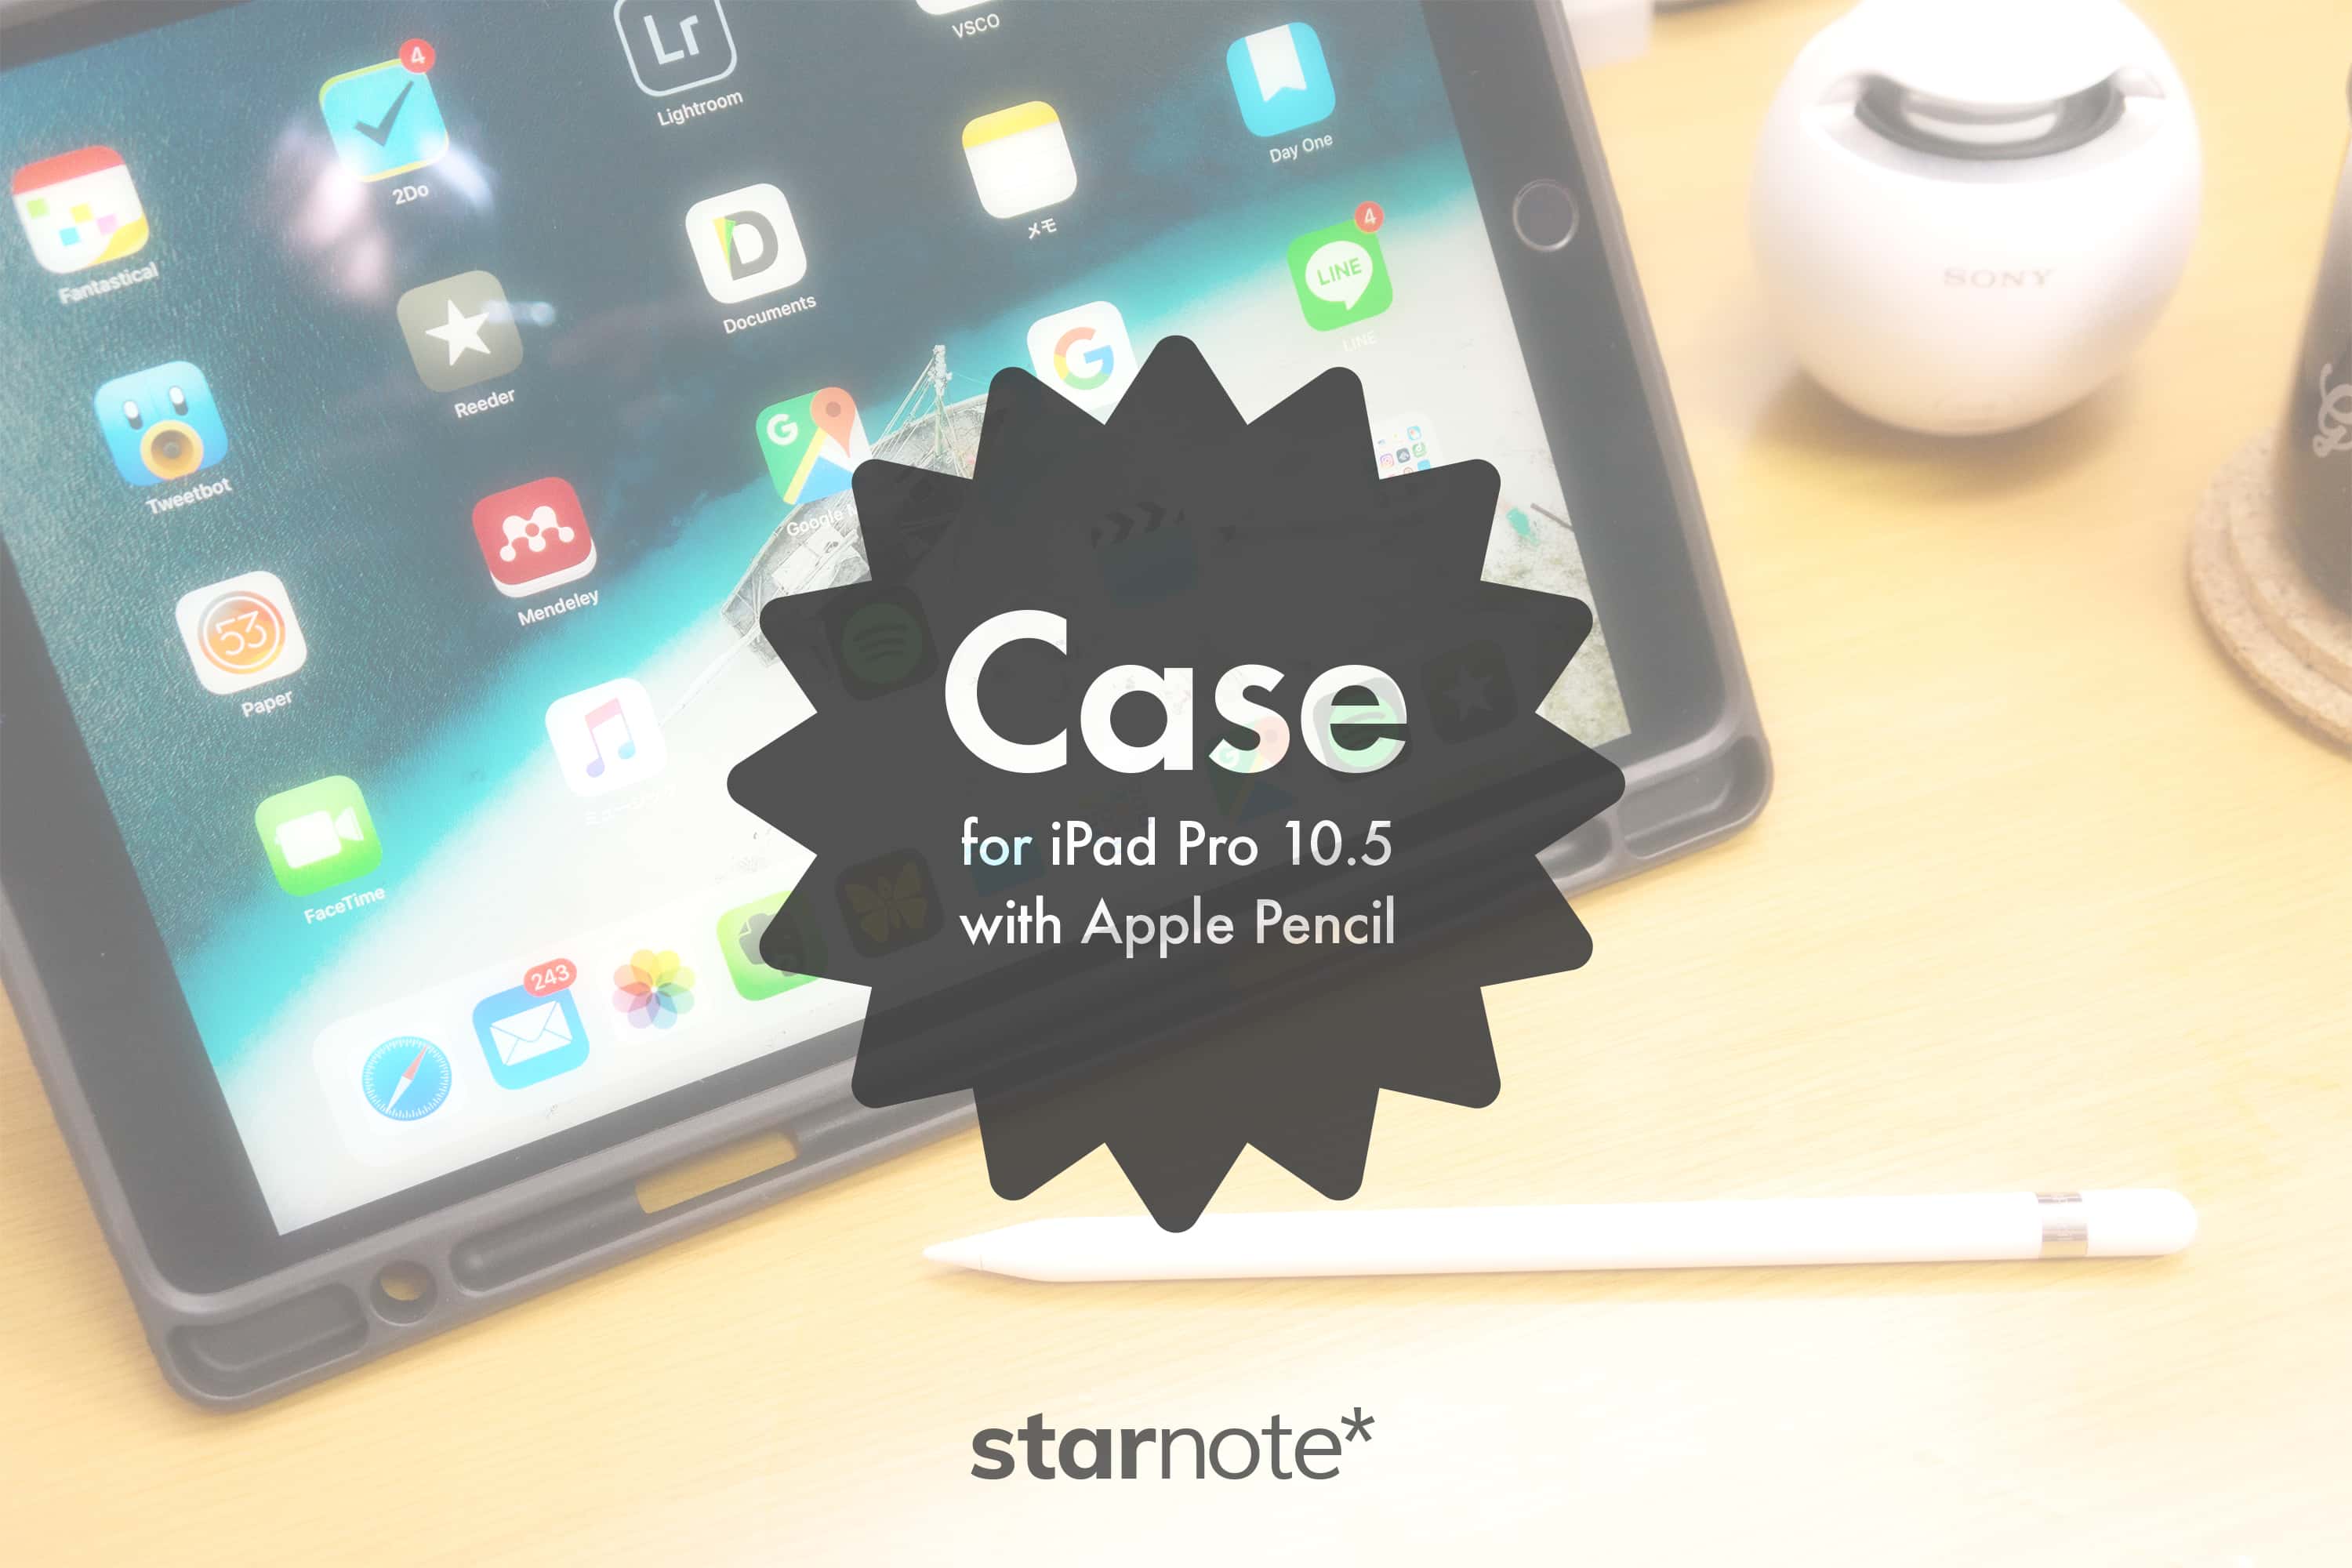 Apple Pencilを一緒に収納できるケース「iVAPO保護カバー for iPad Pro 